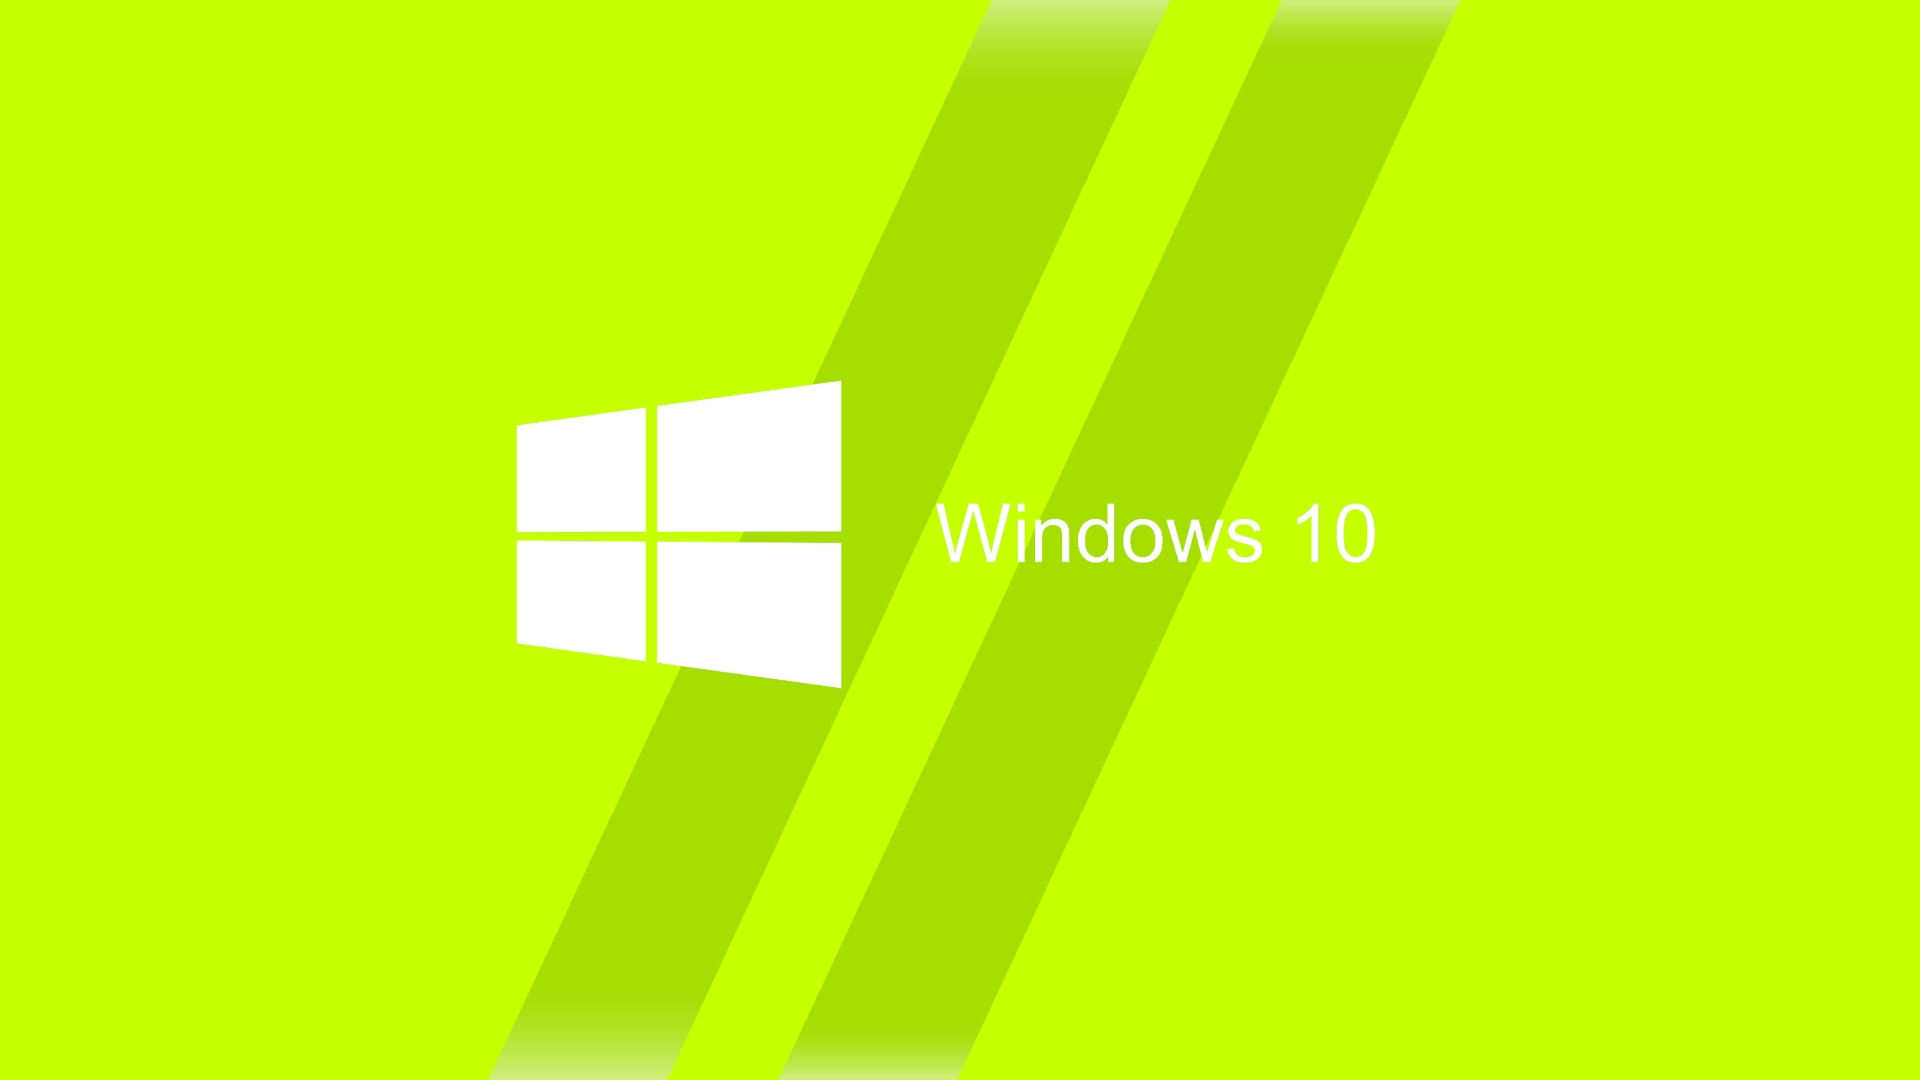 Hình nền Win 10 2024 đẹp - Windows 10 là hệ điều hành được nhiều người yêu thích và sử dụng. Và đến 2024, hình nền win10 cũng được cập nhật với những bức ảnh đẹp và hiện đại nhất. Với những màu sắc tươi trẻ và khả năng tương thích cao, hình nền đem đến cho máy tính của bạn một vẻ đẹp mới lạ và thú vị.